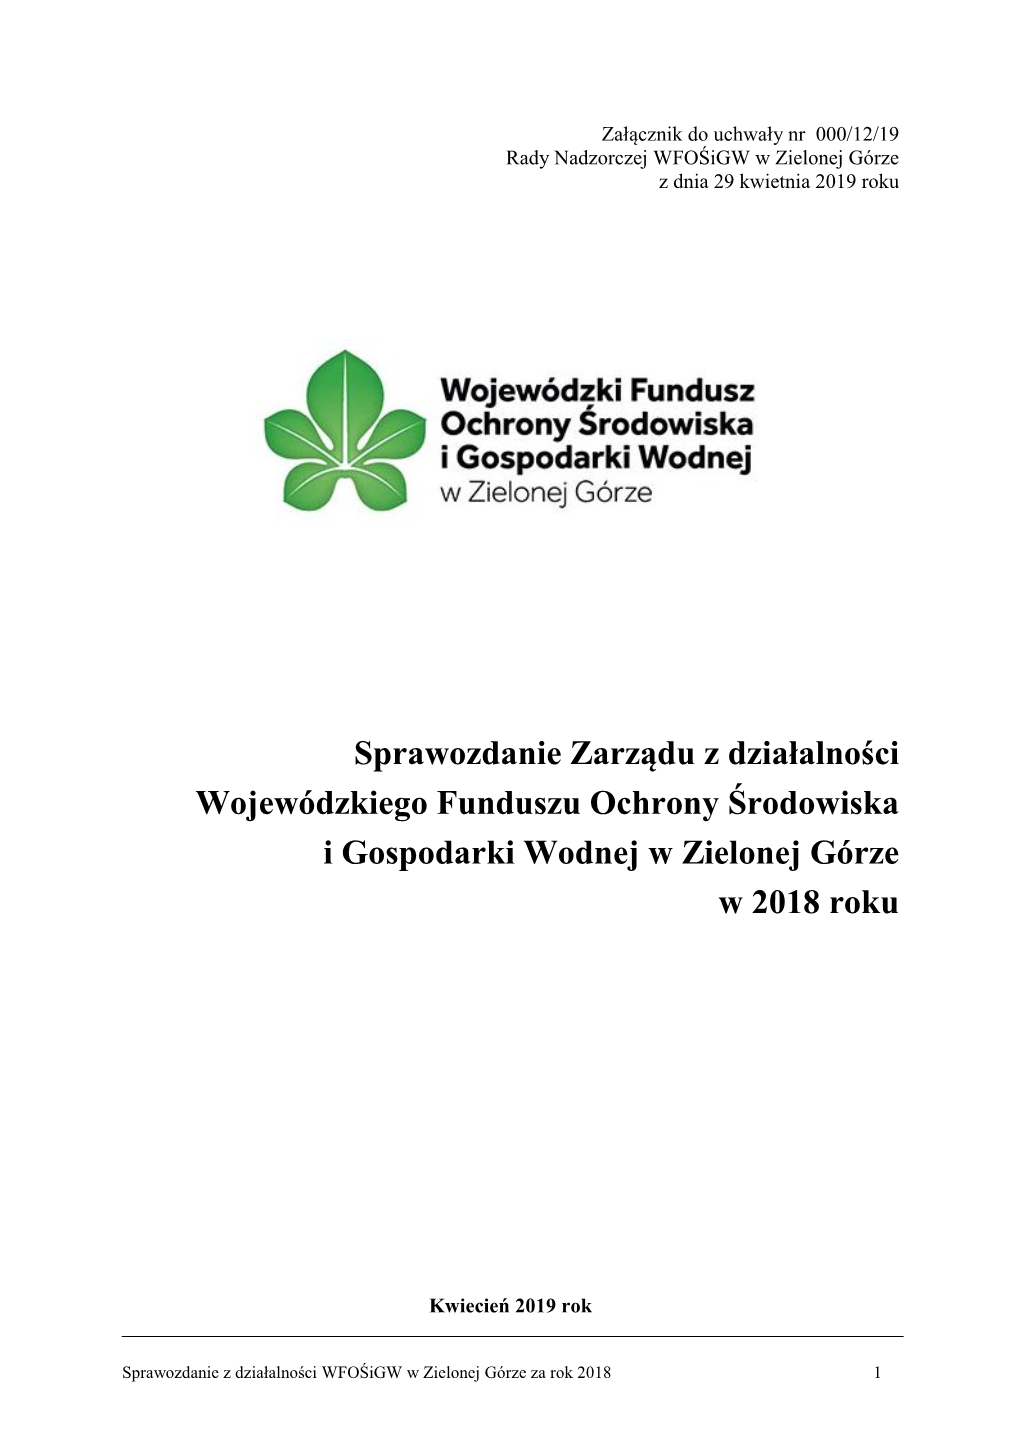 Sprawozdanie Zarządu Z Działalności Wojewódzkiego Funduszu Ochrony Środowiska I Gospodarki Wodnej W Zielonej Górze W 2018 Roku